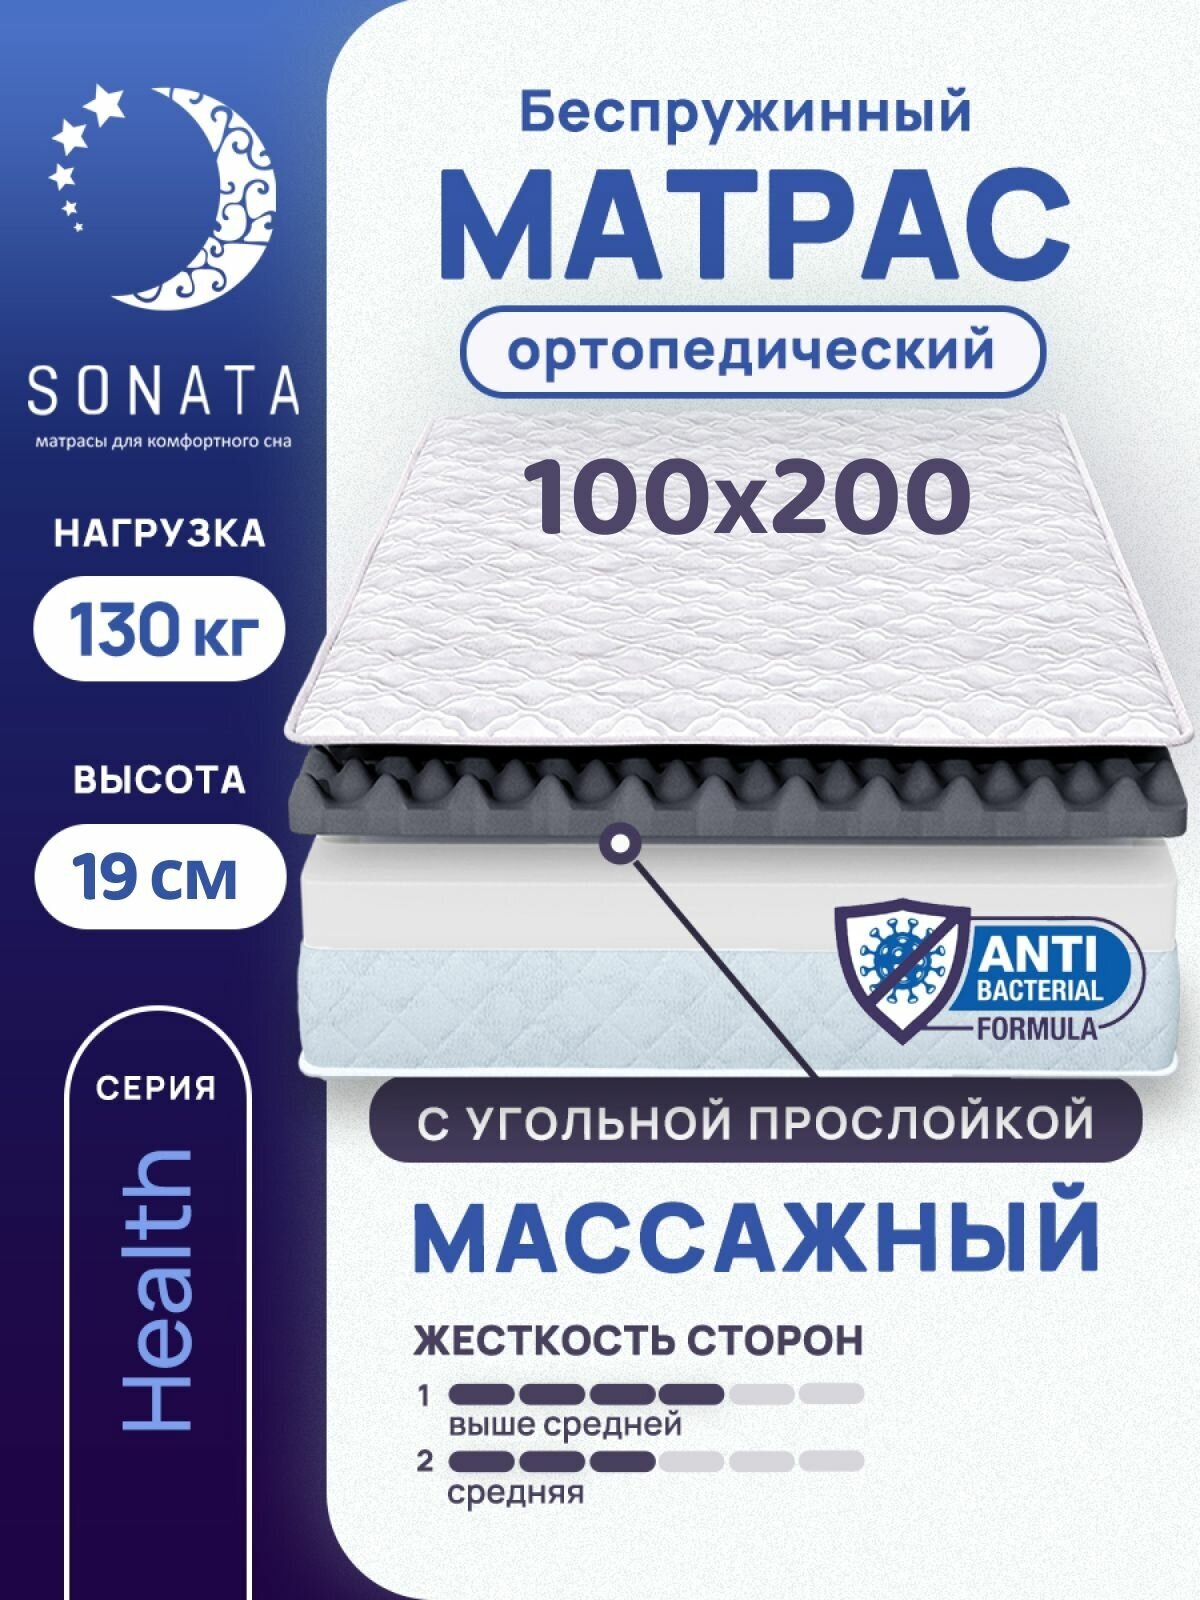 Матрас 100х200 см SONATA, беспружинный, односпальный, матрац для кровати, высота 19 см, с массажным эффектом